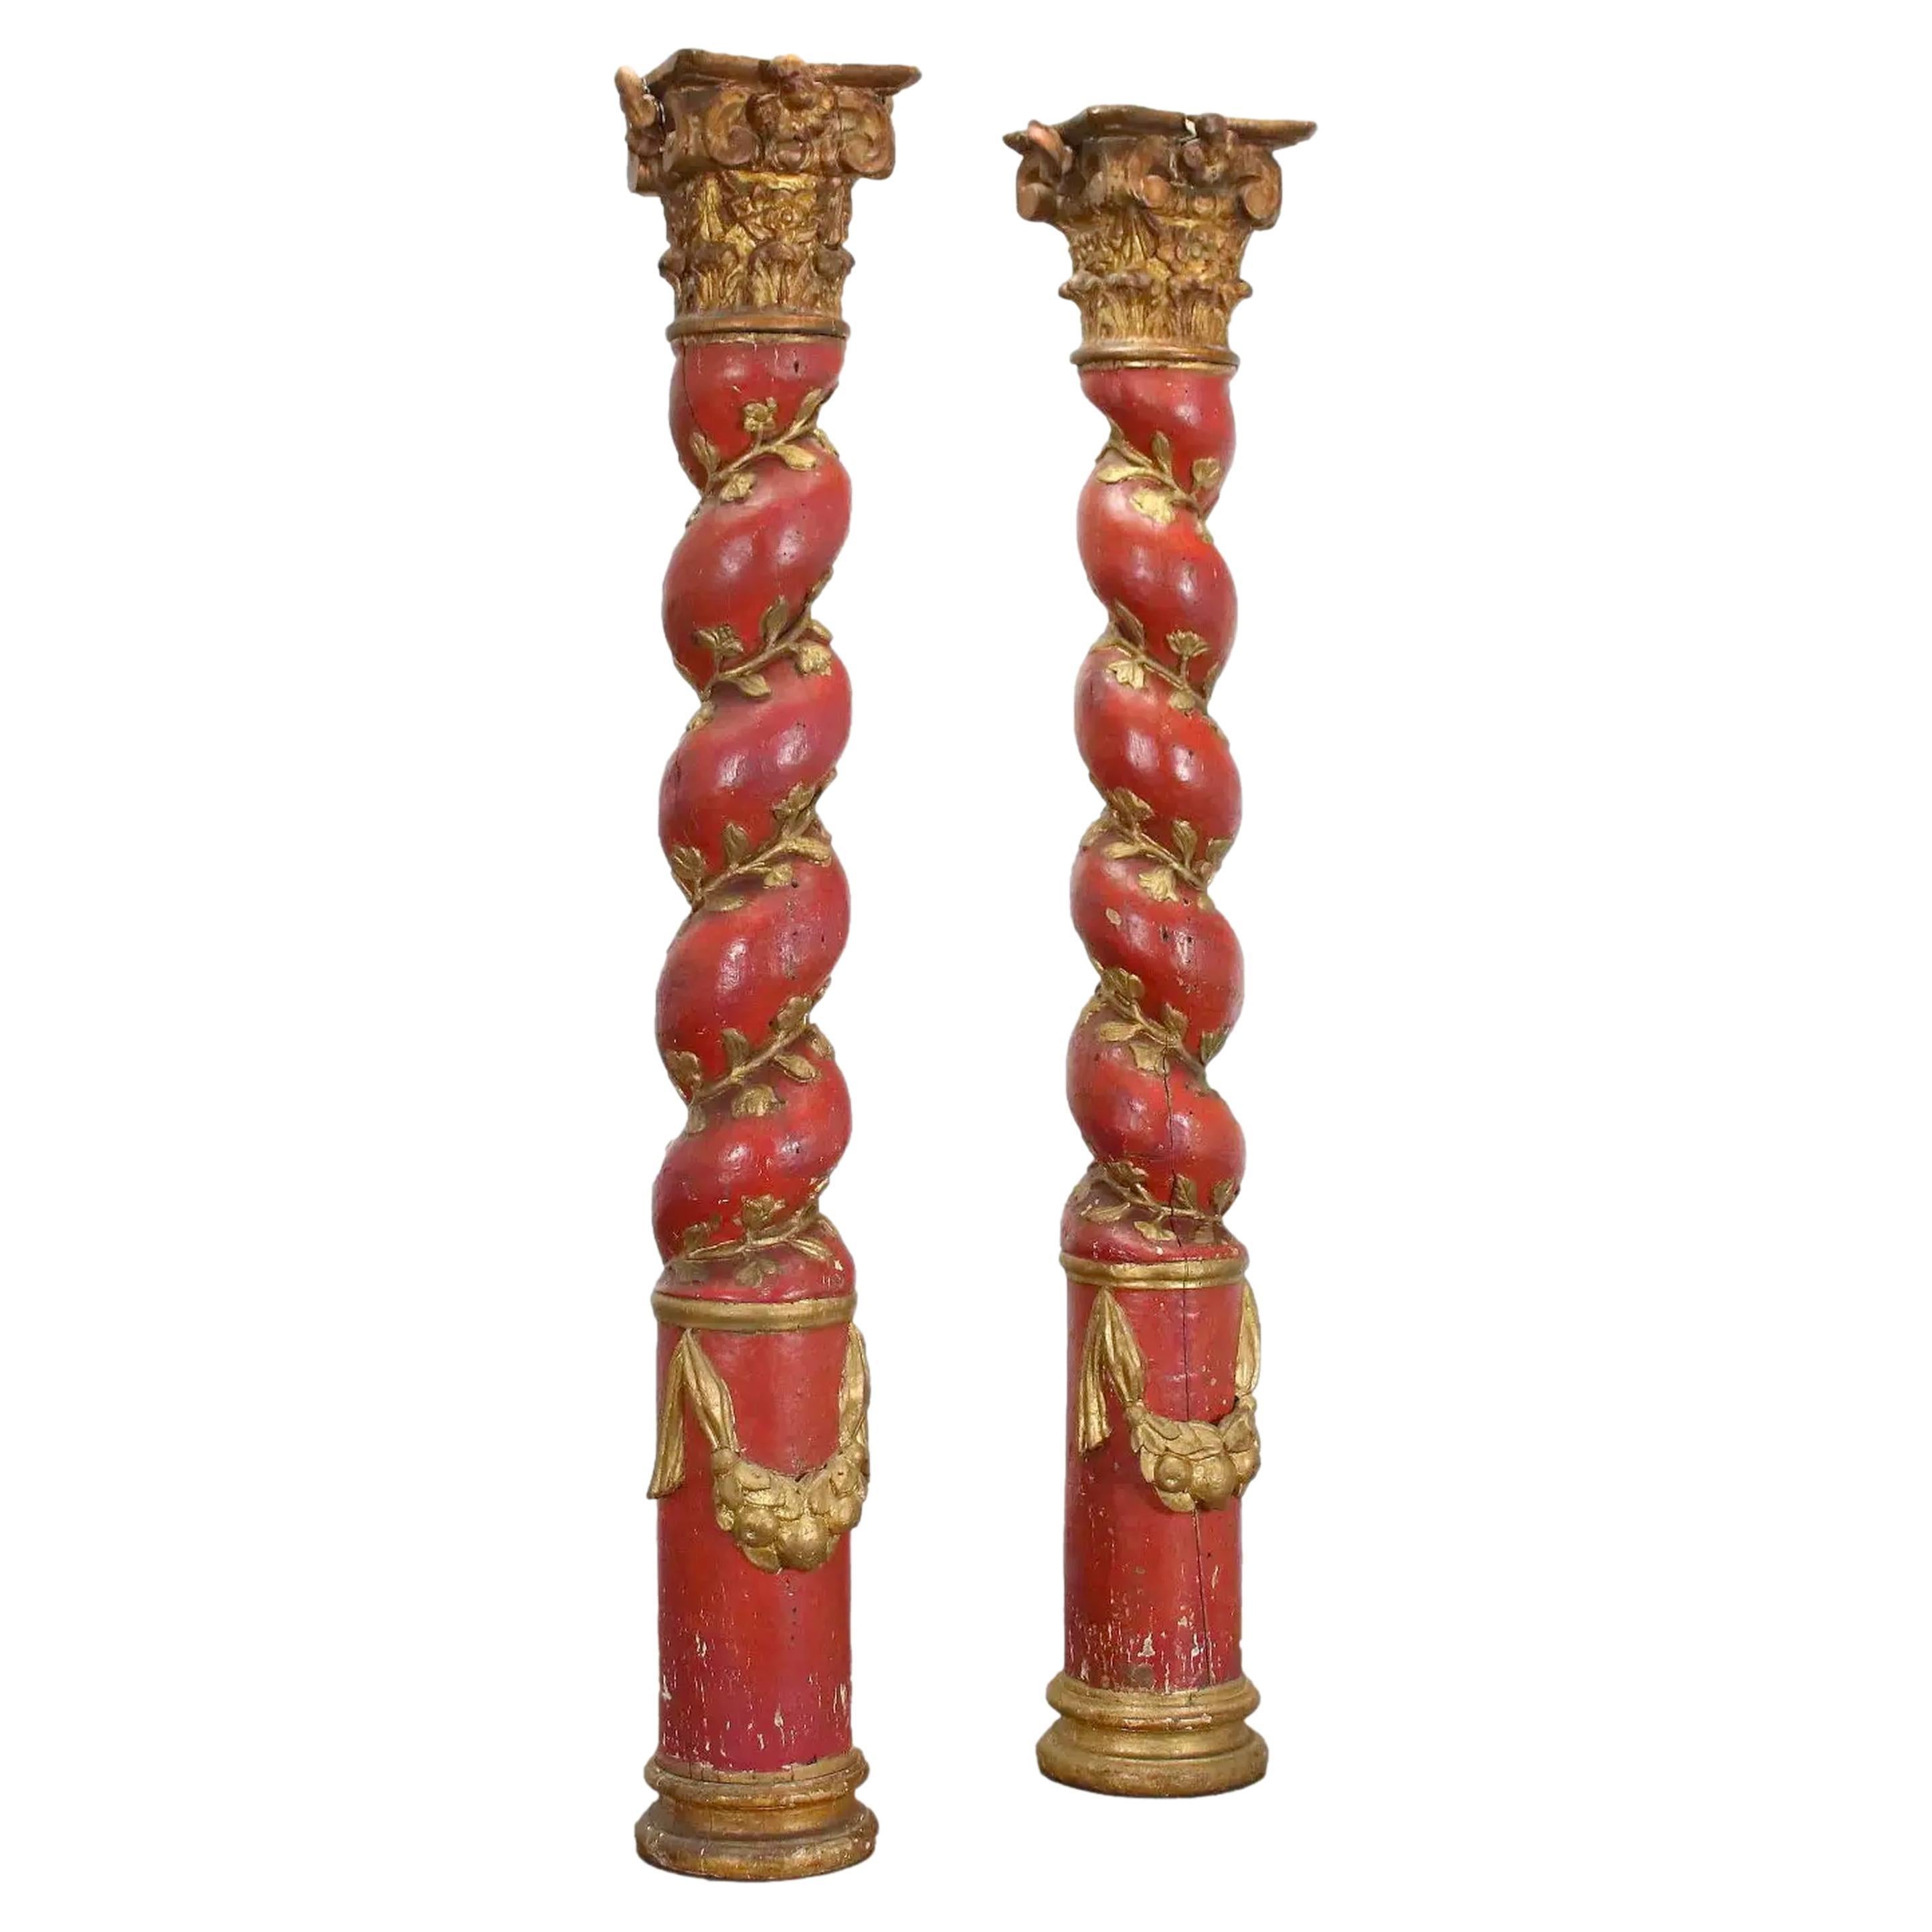 Paire de colonnes baroques espagnoles de style Solomonic, vers 1740